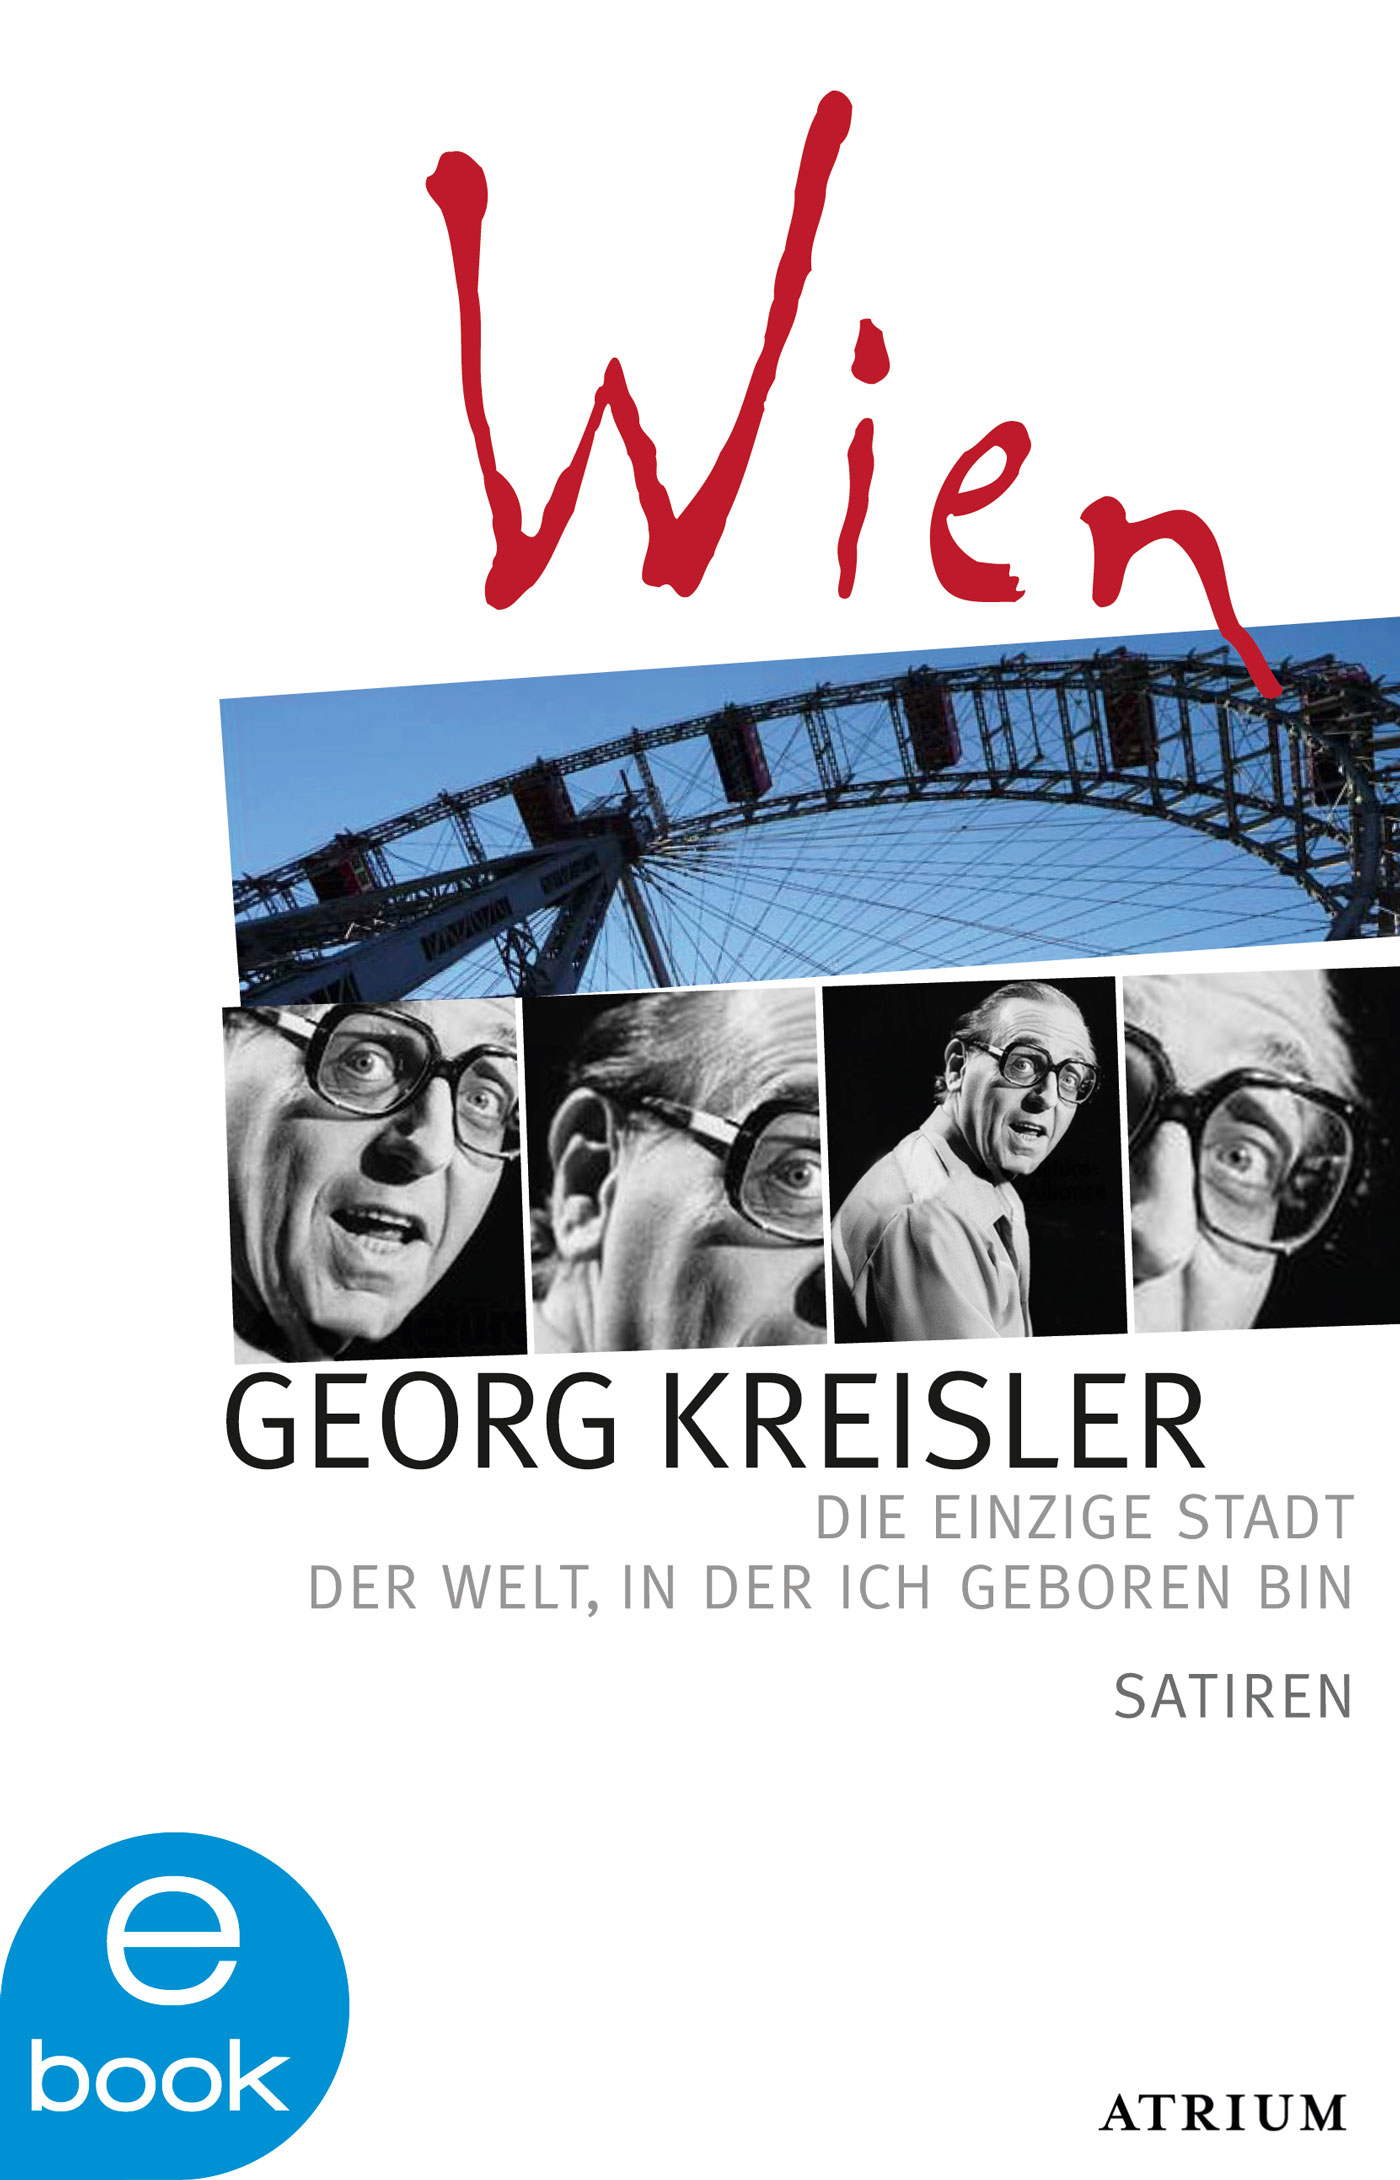 Georg Kreisler Wien